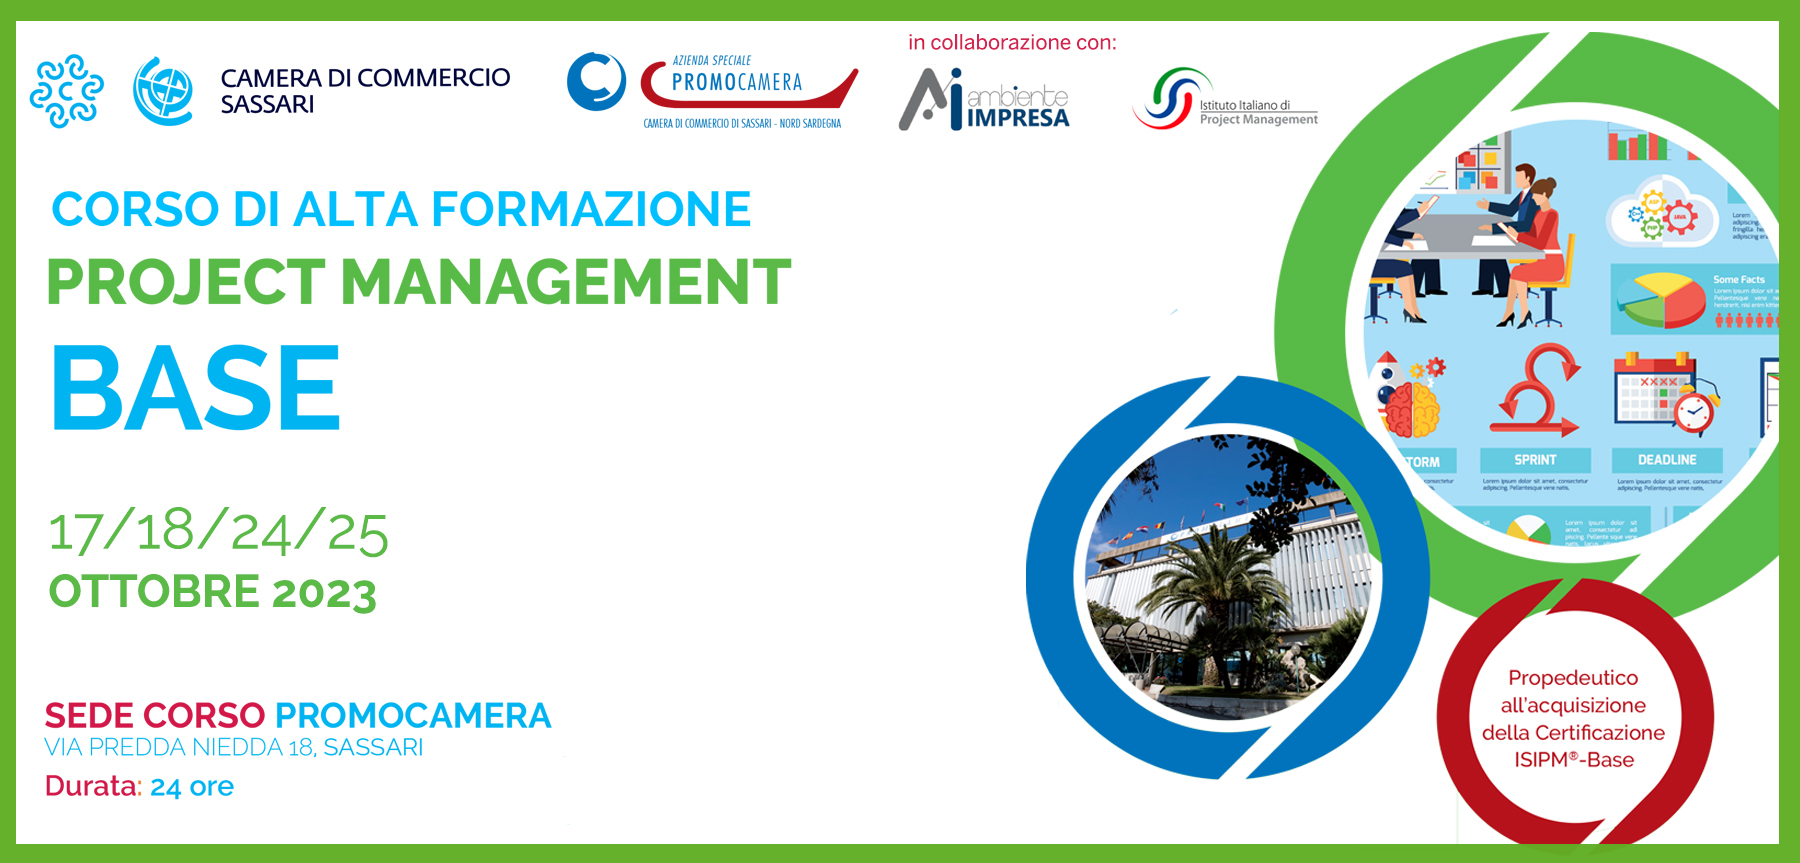 Project Magement base sito ottobre 2023 Promocamera Sassari - Ambiente Impresa srl Cagliari 